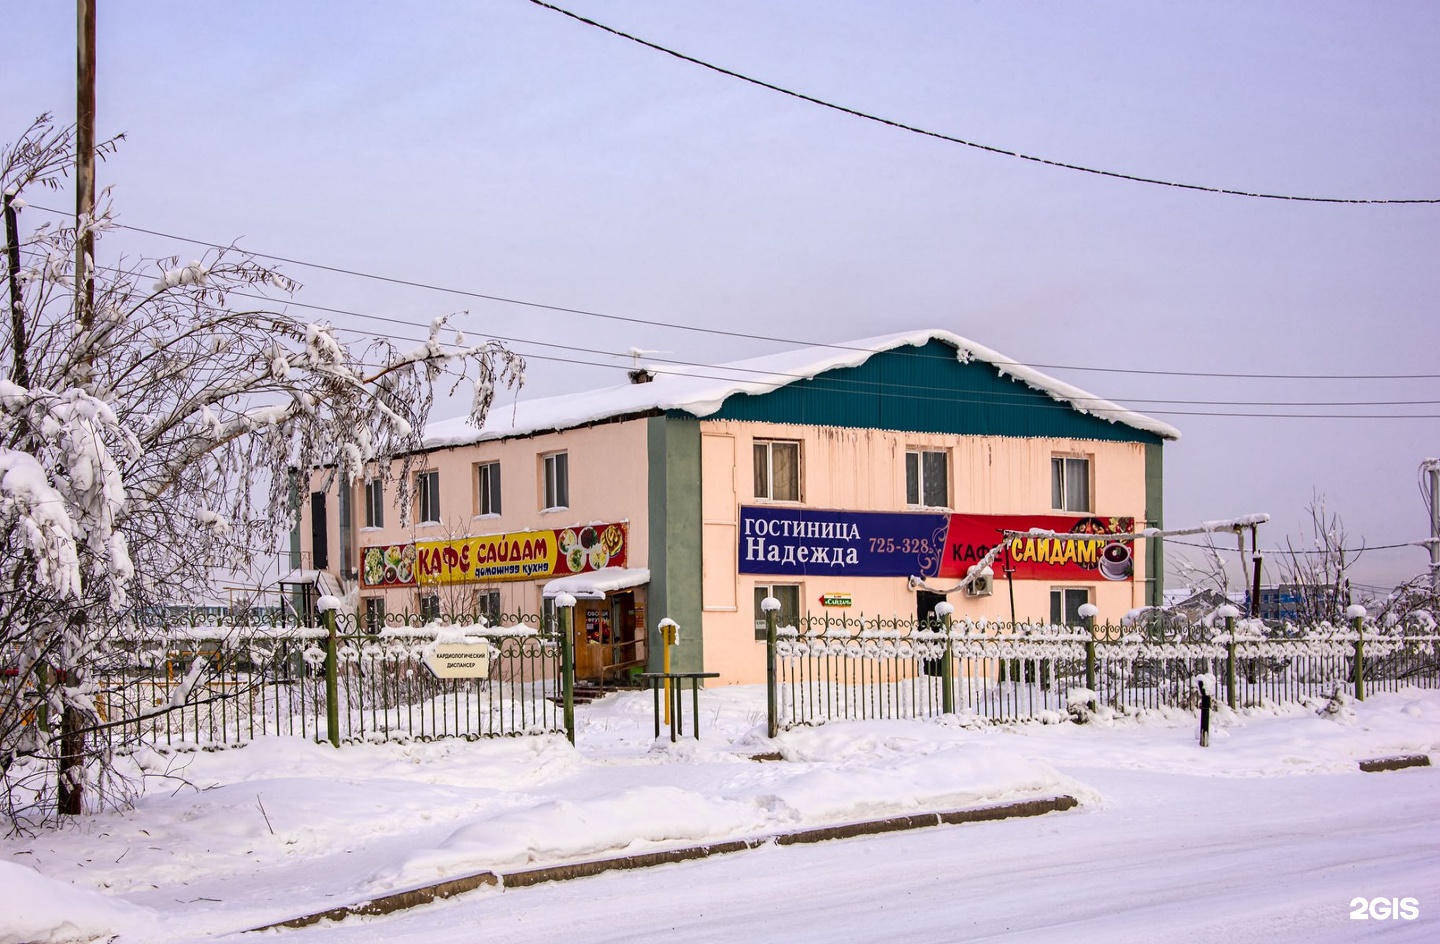 Гостиница надежда якутск цены